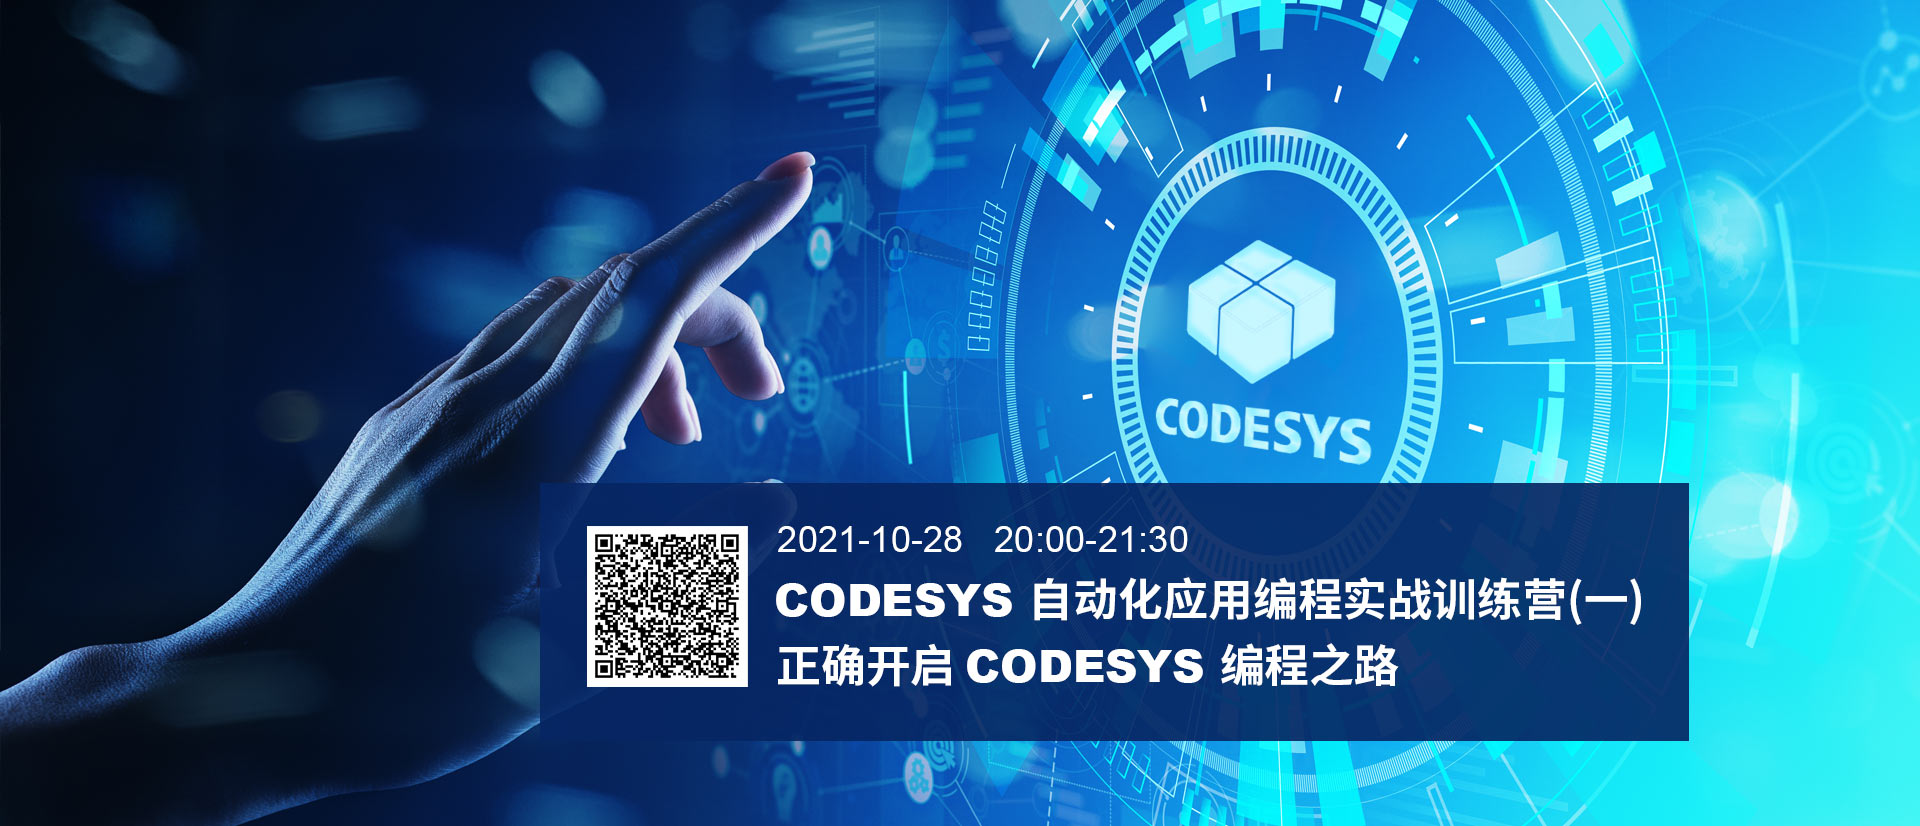 在？CODESYS自動化應用編程實戰訓練營本周開營！